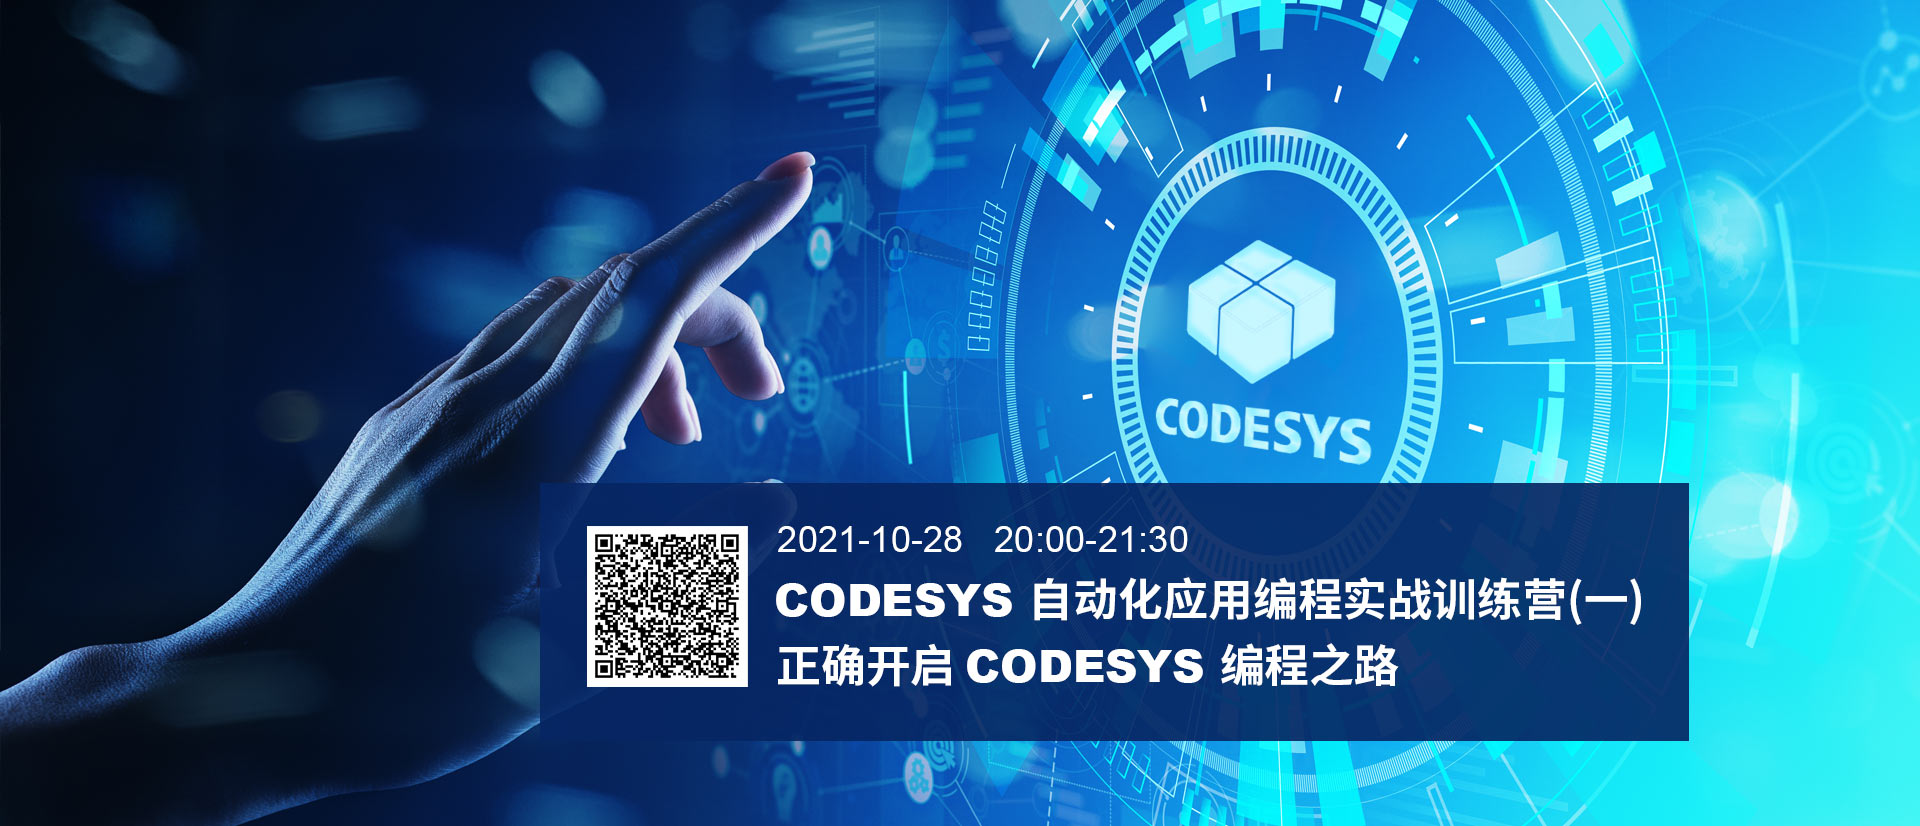 在？CODESYS自動化應用編程實戰訓練營本周開營！